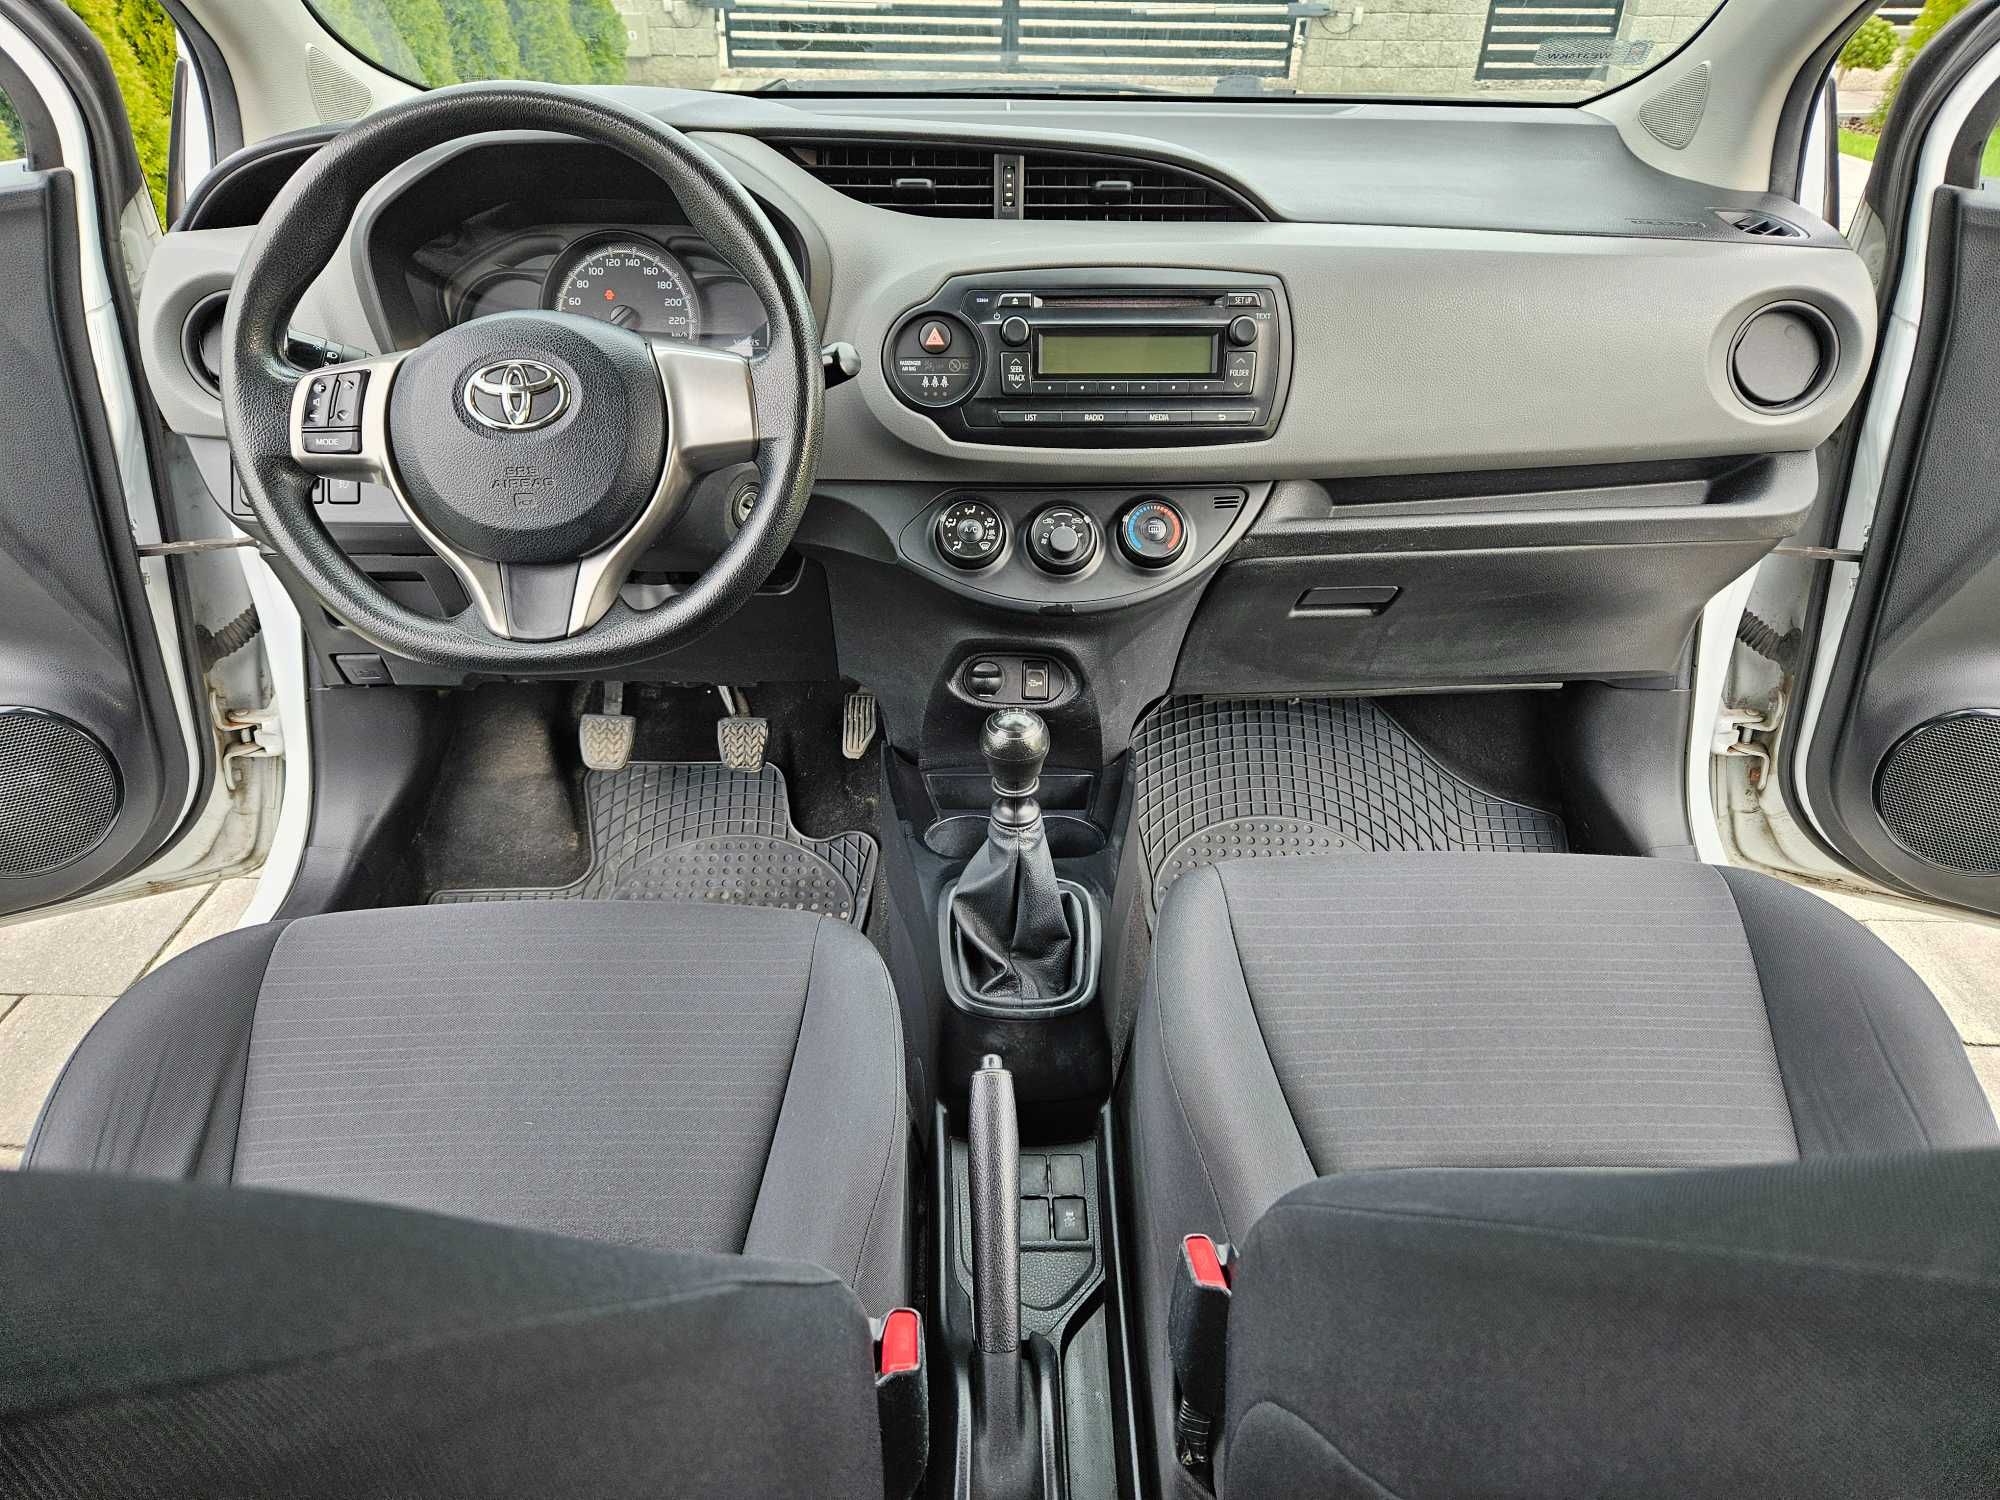 Toyota Yaris 1.4 diesel, 149 000km, zadbane i ekonomiczne auto.